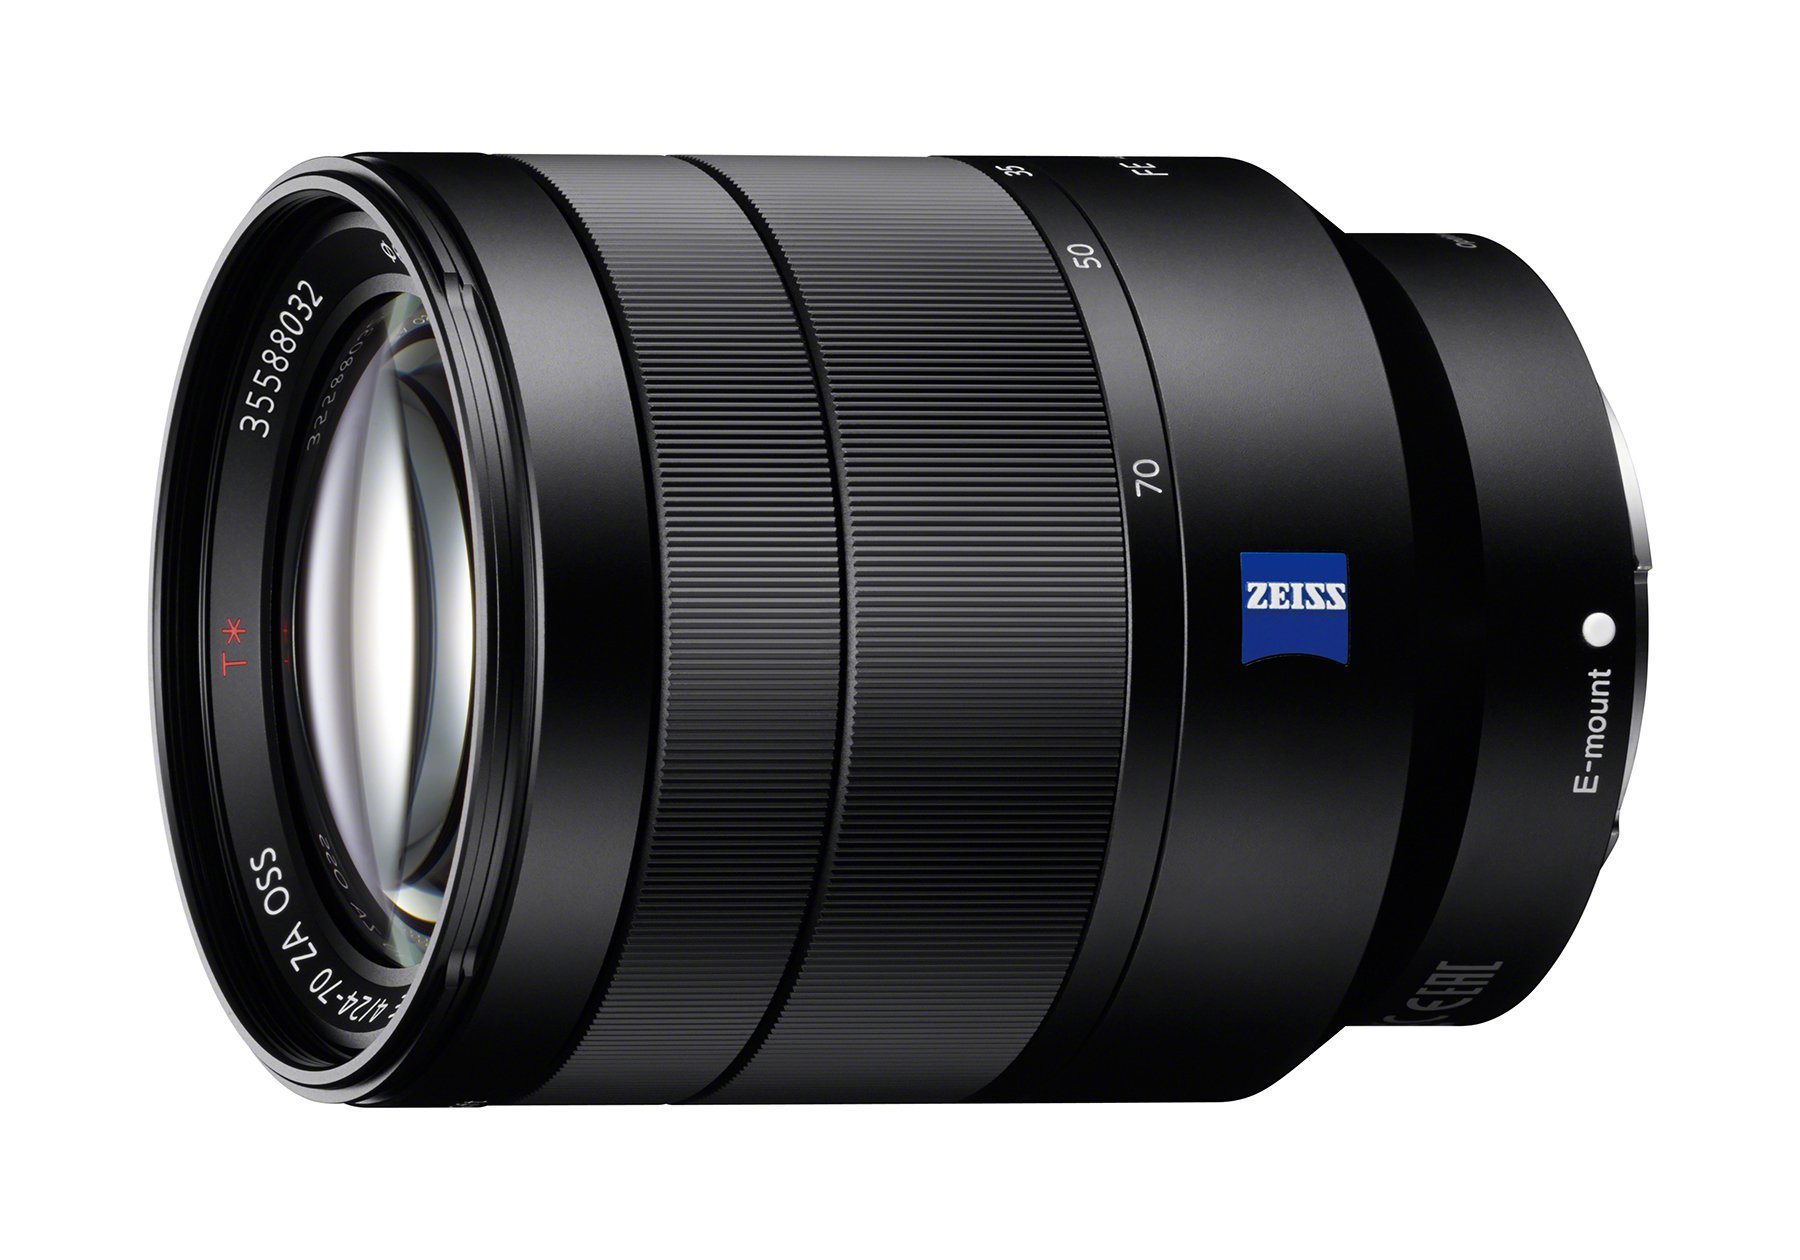 Sony 24-70mm f/4 Vario-Tessar T FE OSS Interchangeable Full Frame Zoom Lens (Renewed)